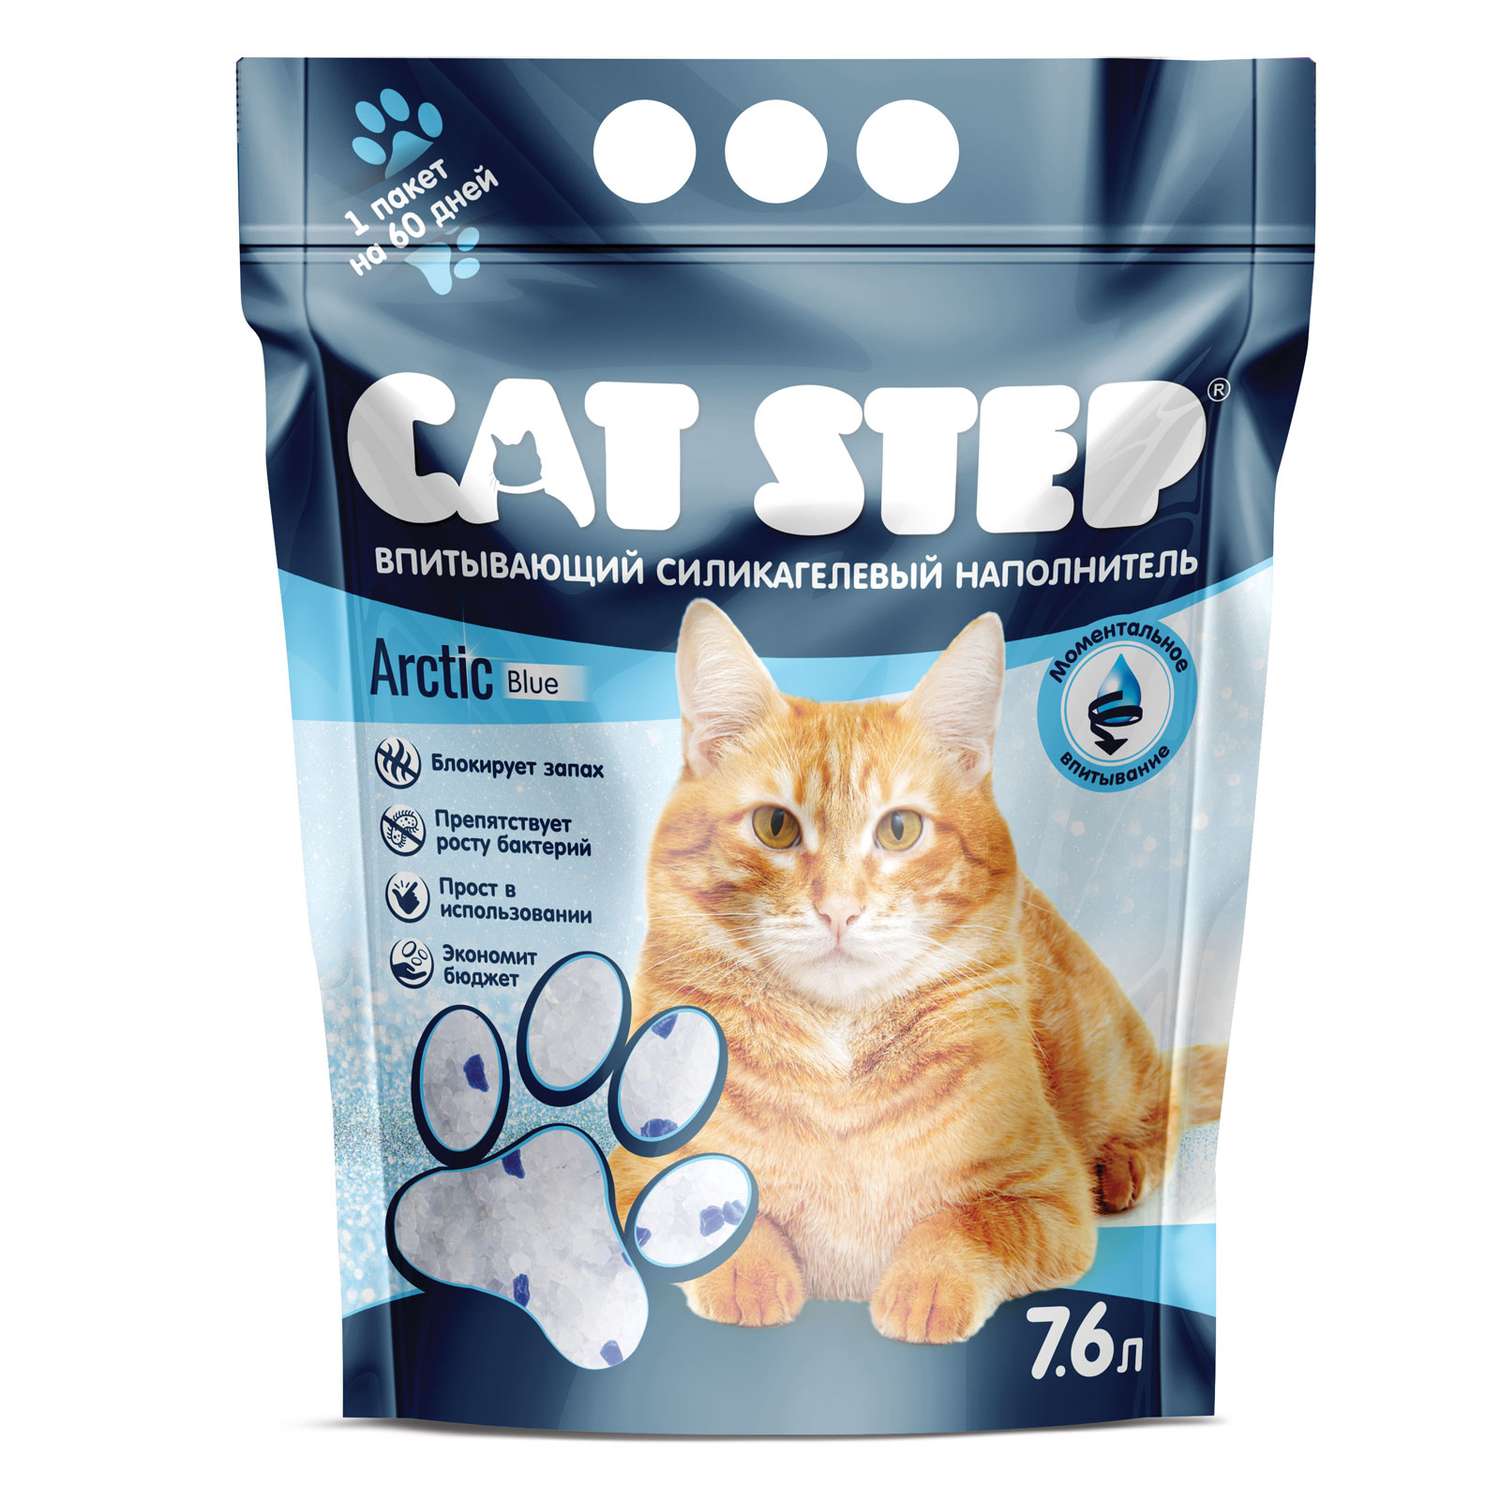 Наполнитель для кошек Cat Step Arctic Blue силикагелевый 7.6л - фото 2